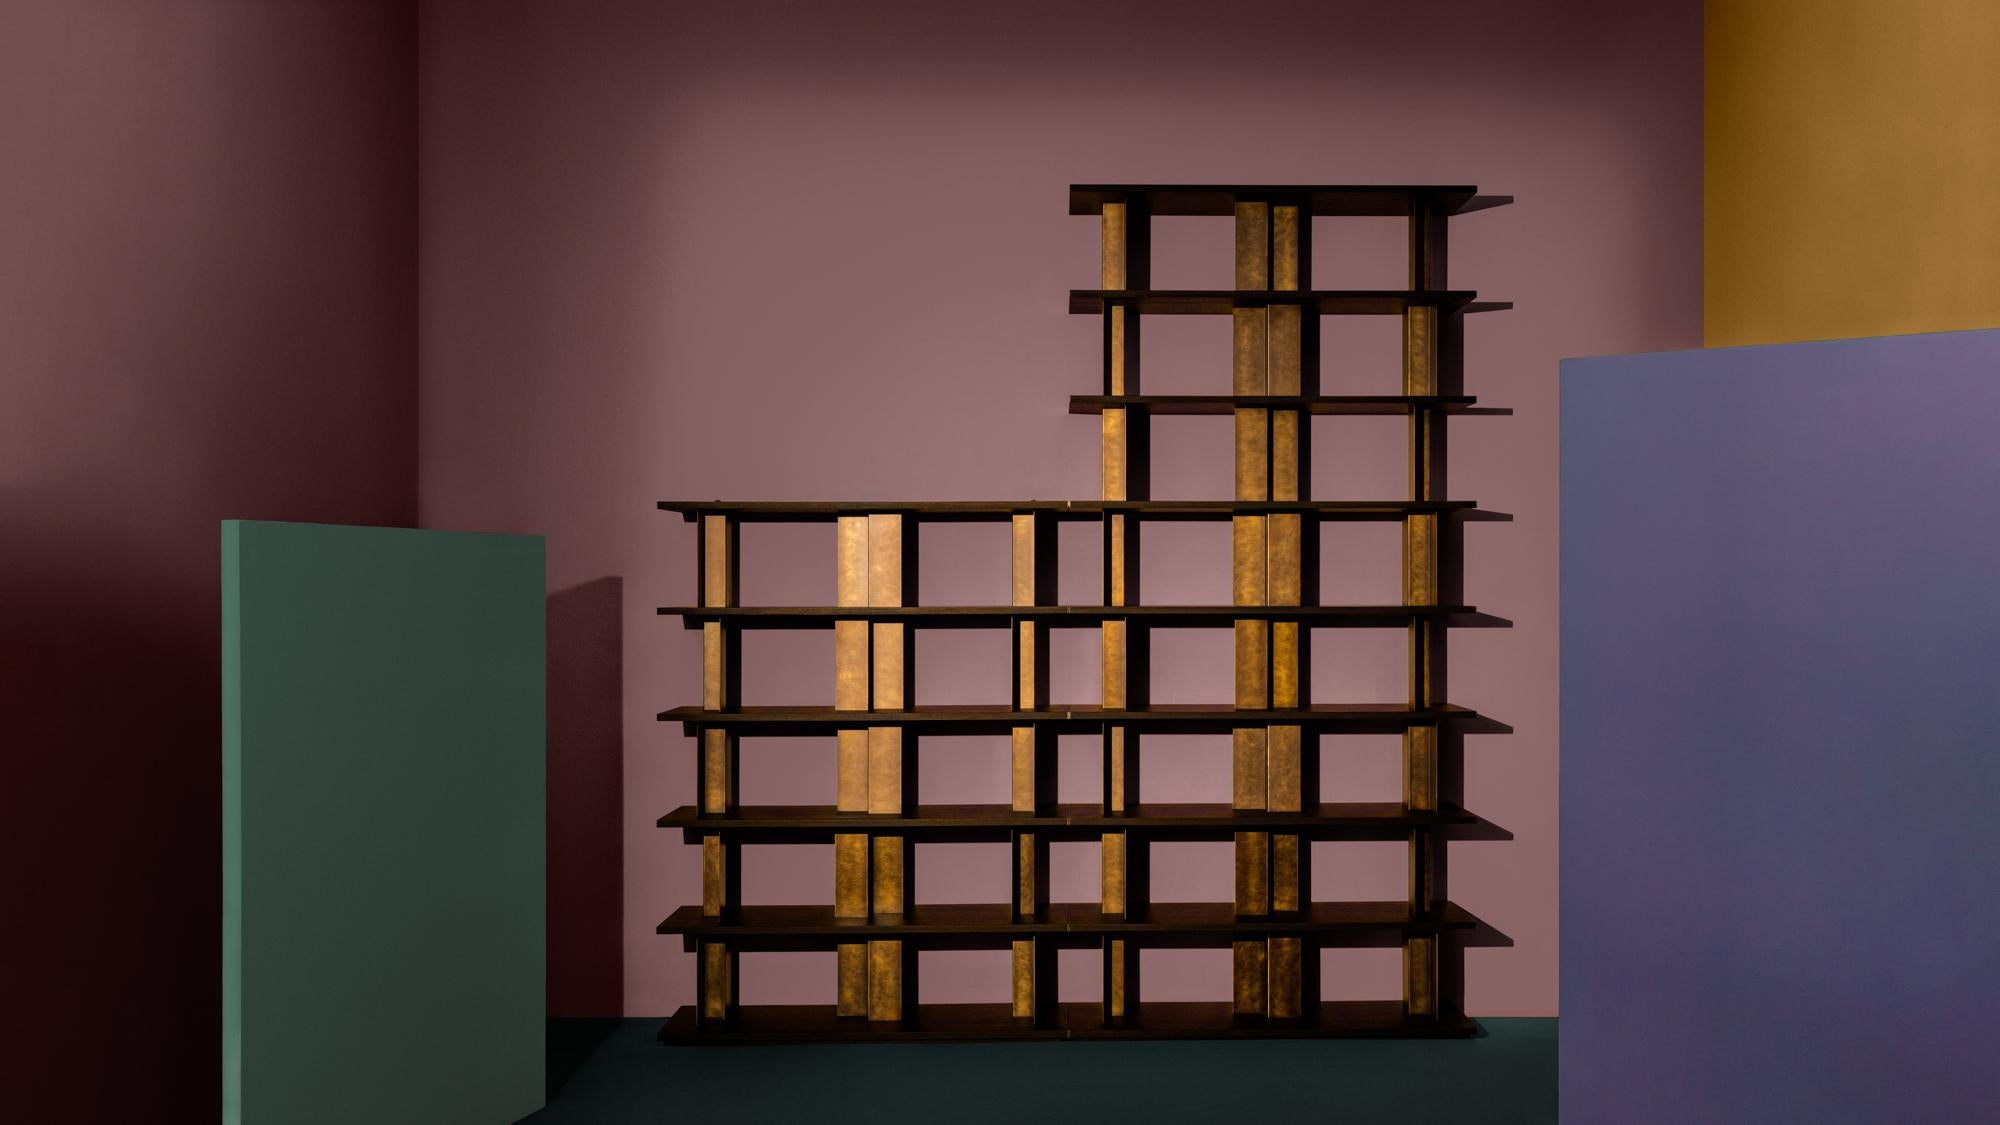 Reana, une bibliothèque modulaire, est le résultat d'une approche rigoureuse du design par Oliver Thomas Wall. Comme une architecture, la bibliothèque se détache du mur, puissante et légère à la fois. 
Les étagères en bois noir dialoguent avec les